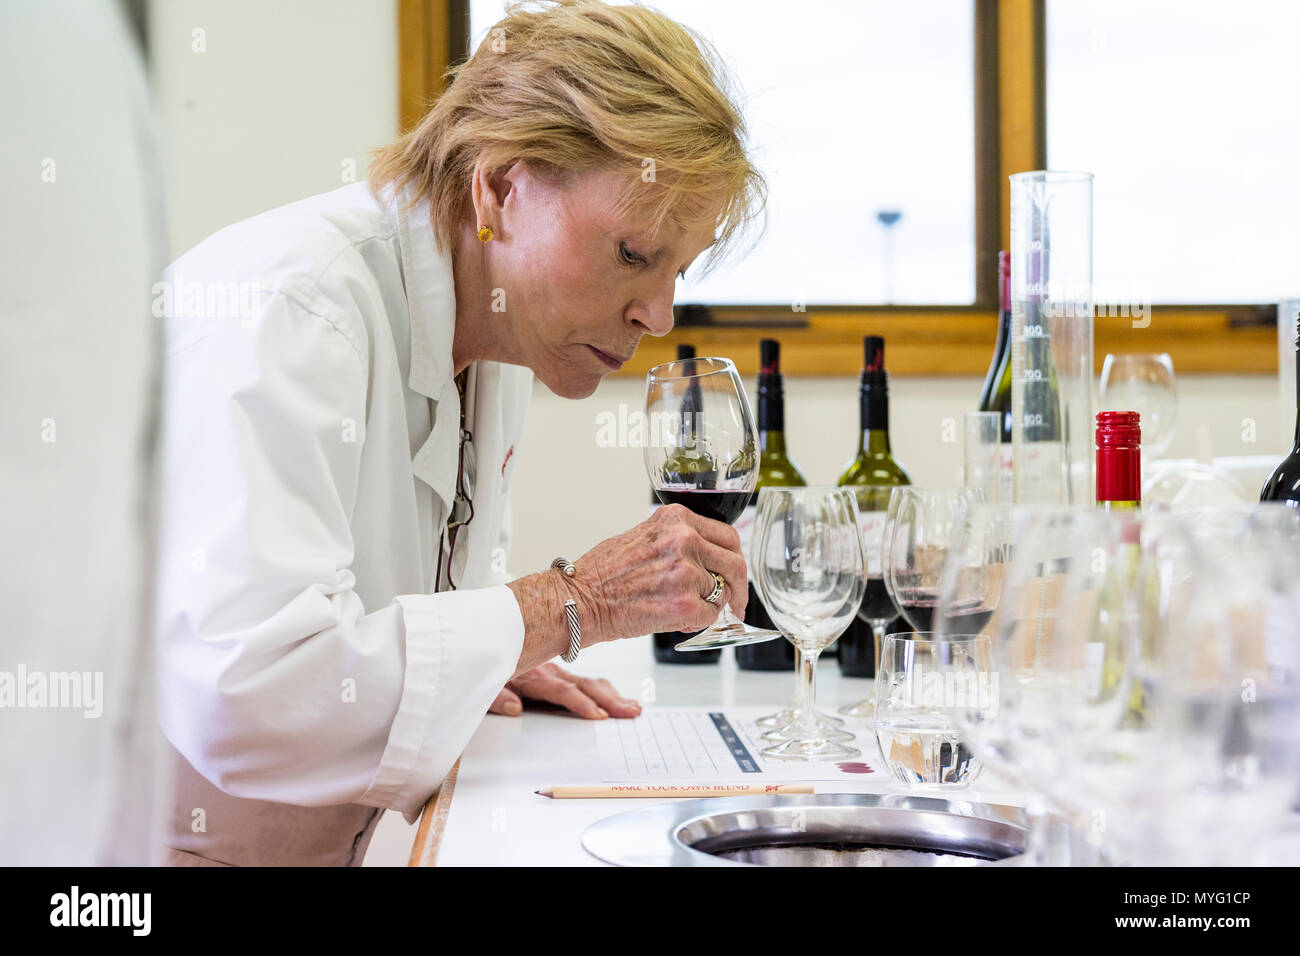 Eine Frau Proben das Aroma von einem Rotwein mischen Sie erstellen in einem Labor ist. Stockfoto